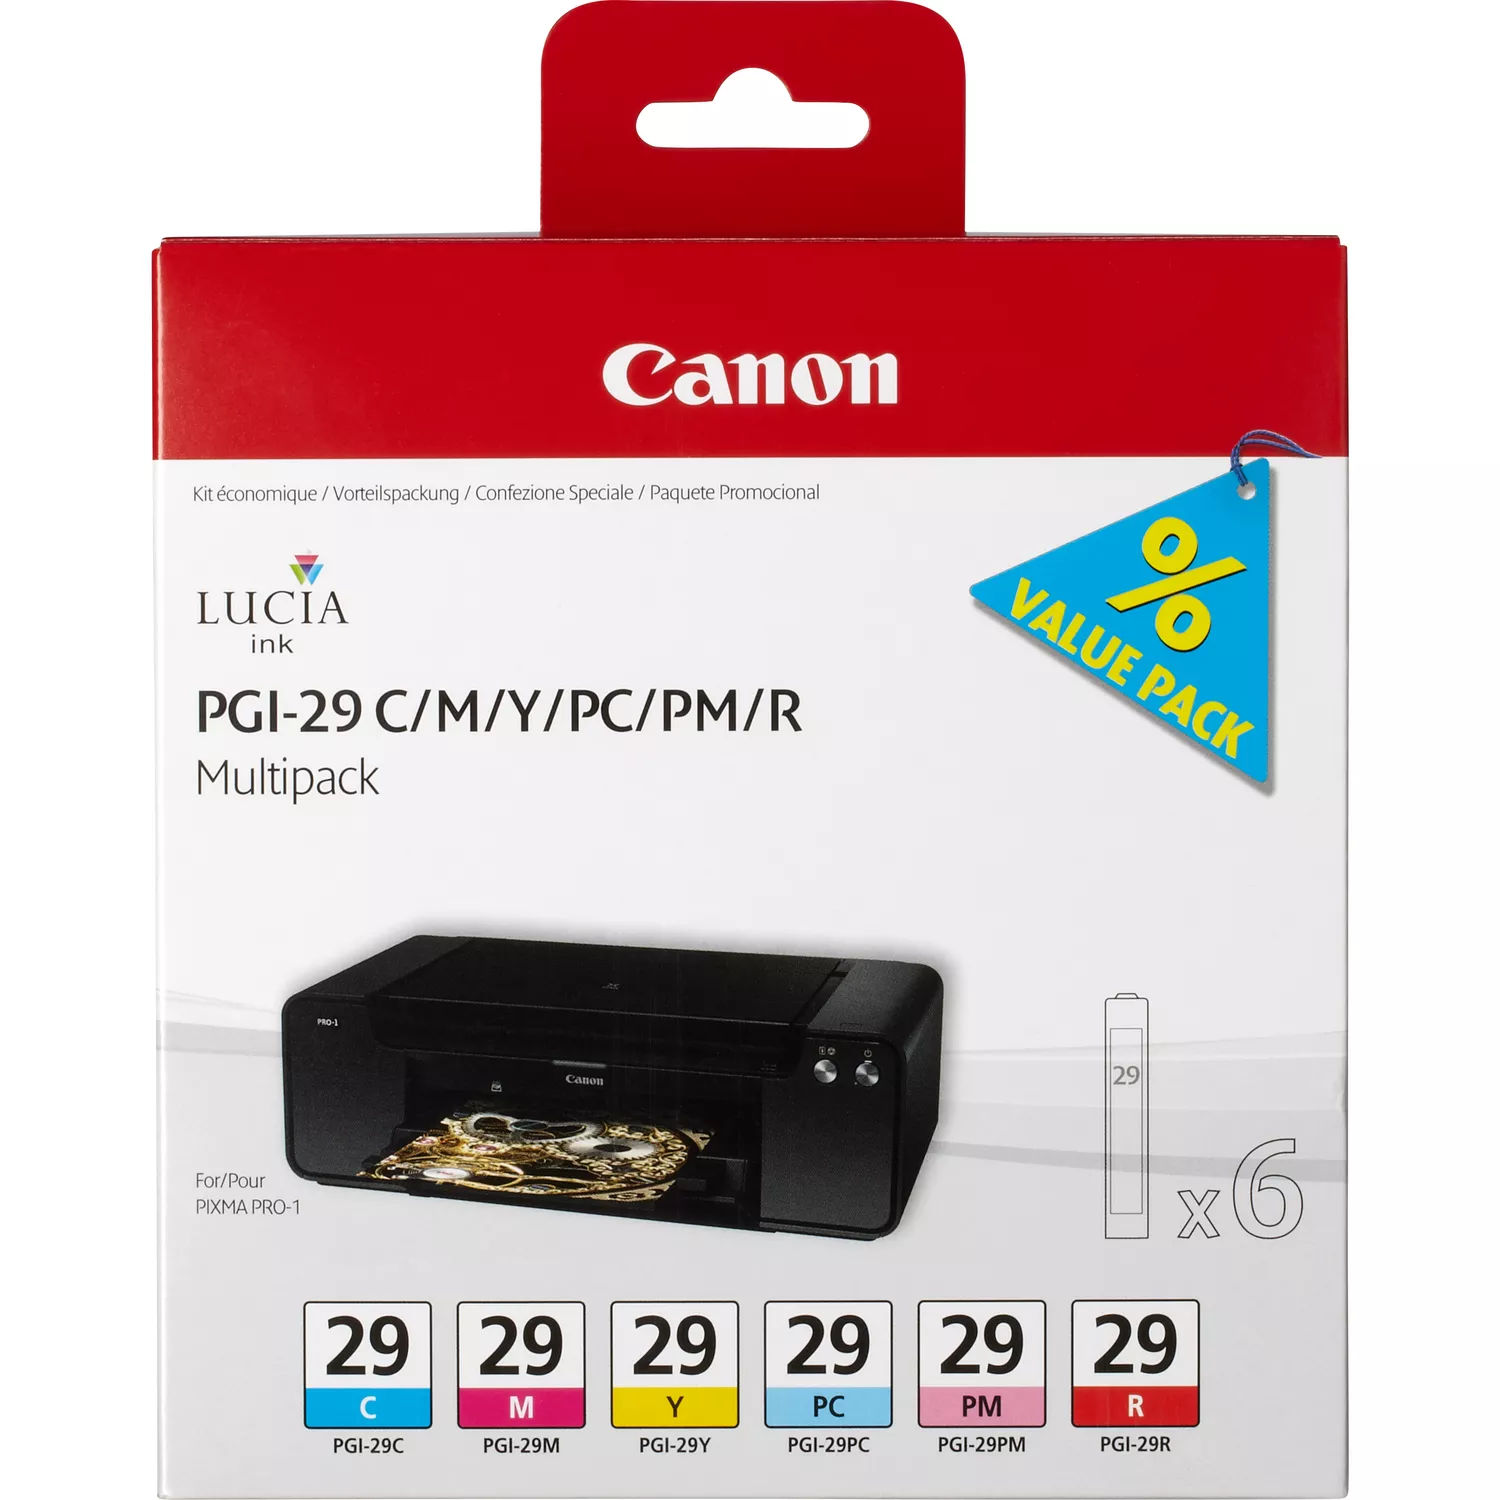 Pacote com 6 cartuchos de tinta originais Canon PGI29 - 4873B005 - Canon 4873B005